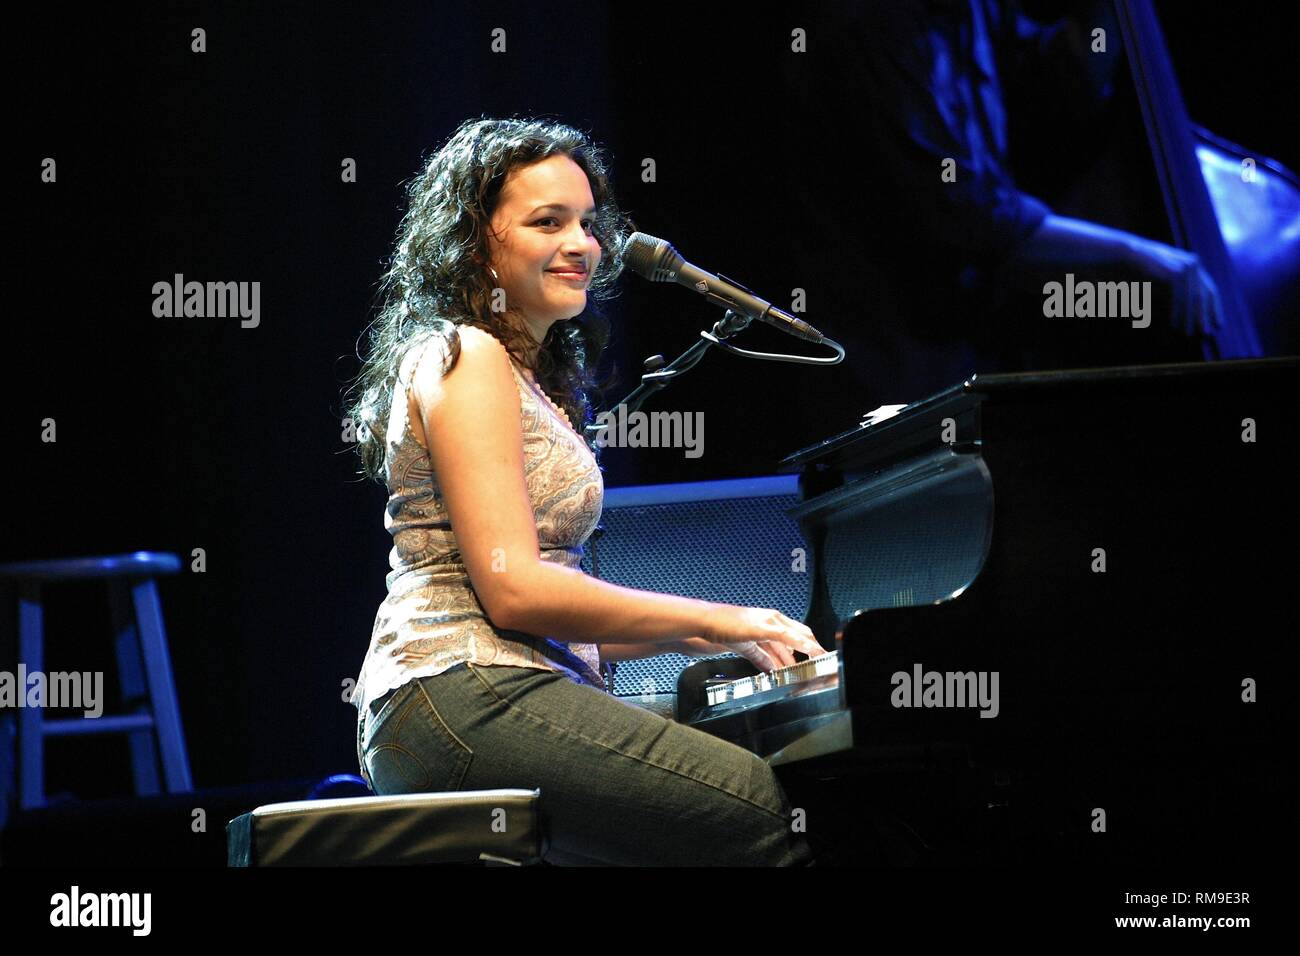 Sänger, Songwriter, Pianist, Keyboarder, Gitarrist, und gelegentlich Schauspielerin Norah Jones ist dargestellt auf der Bühne während einer "live"-Konzert aussehen. Stockfoto